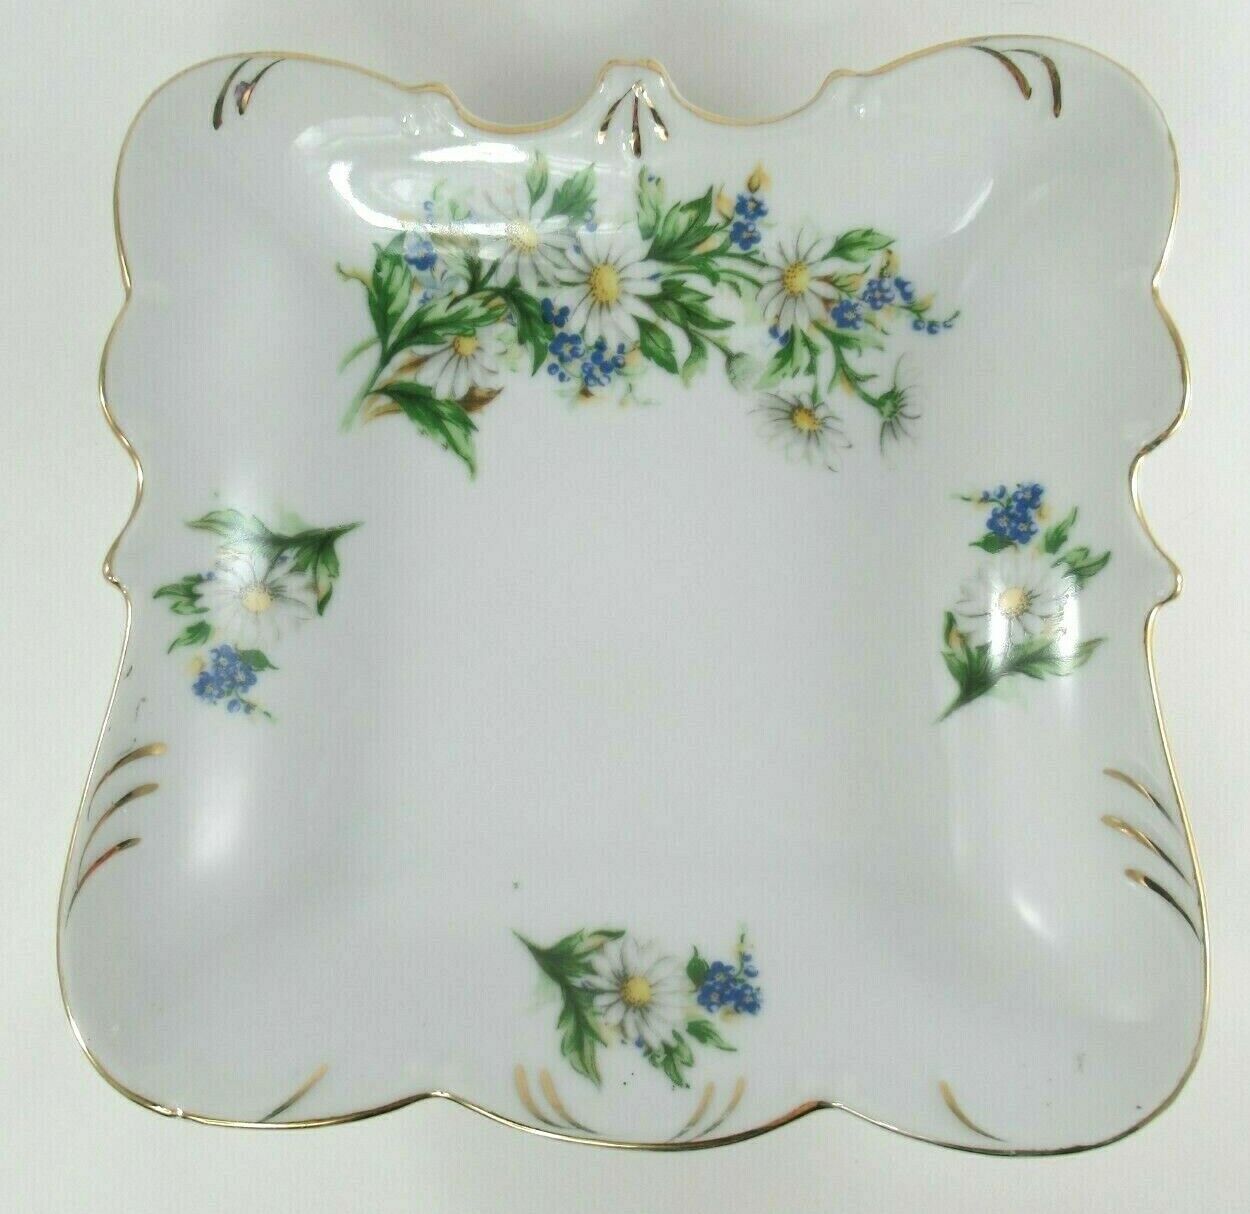 Vintage Square Porcelain Serving Bowl White Daisies Blue Flowers Floral